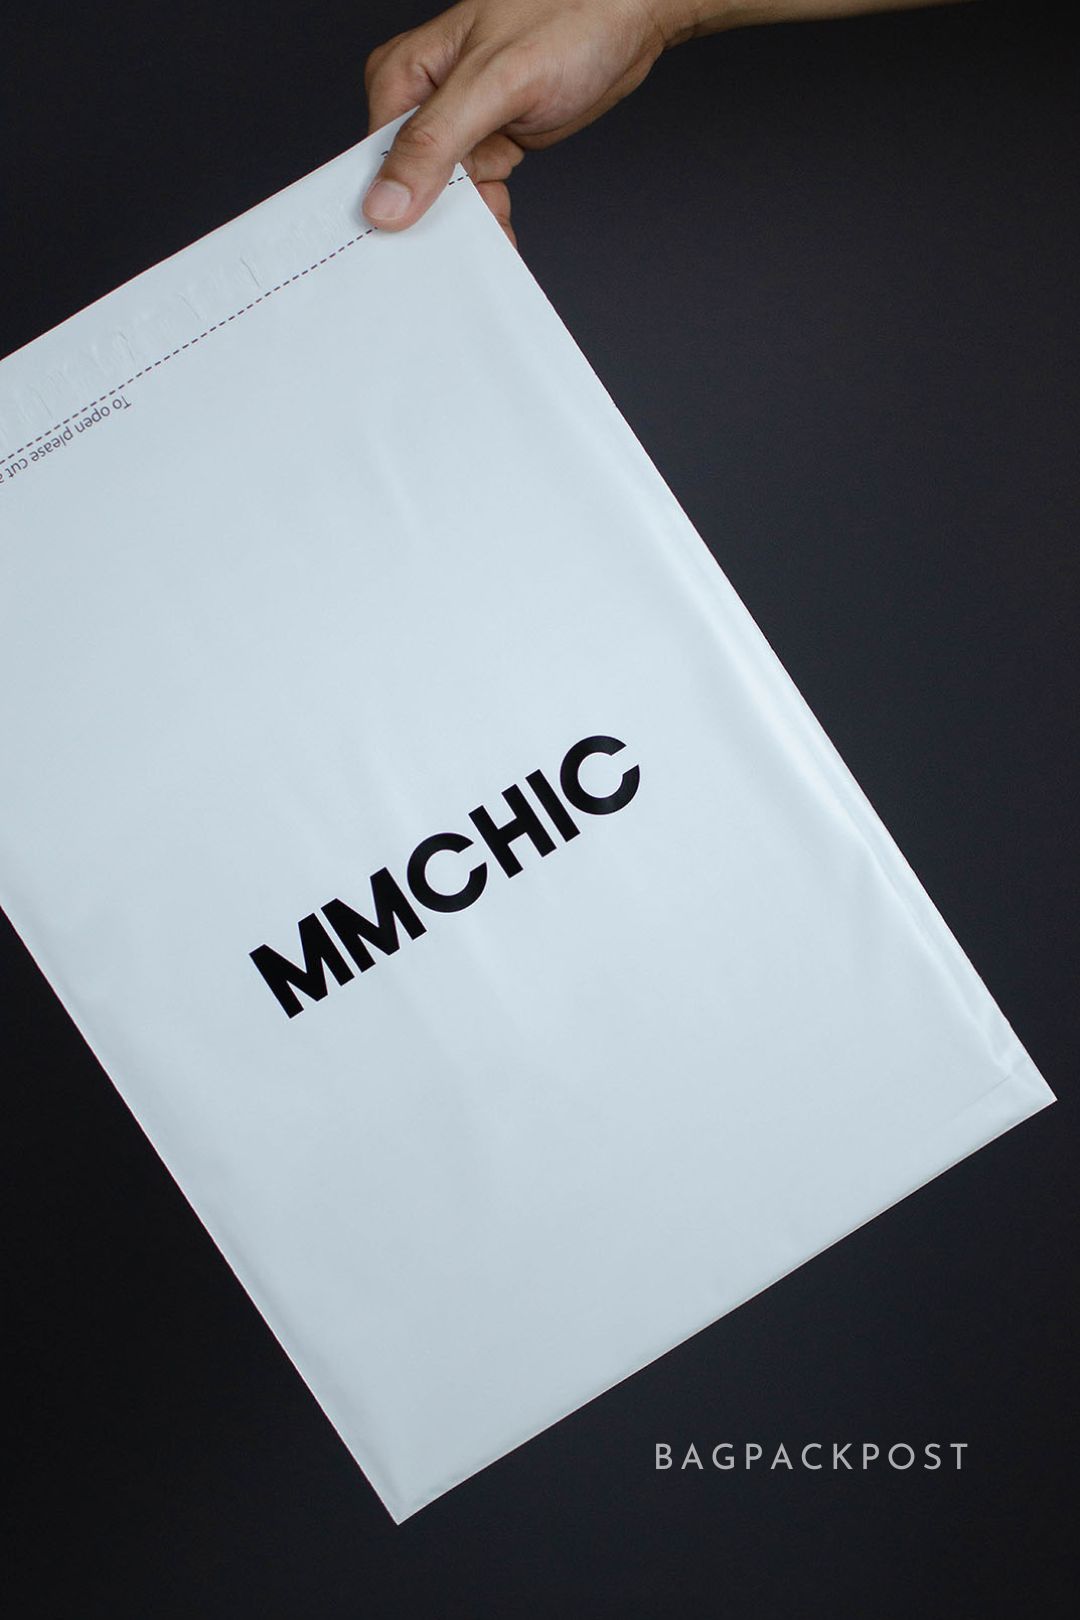 ผลิตถุงไปรษณีย์ ซองไปรษณีย์พิมพ์ลาย mmchic ซองไปรษณีย์สีขาว ถุงไปรษณีย์พิมพ์ลาย 4 BagPackPost